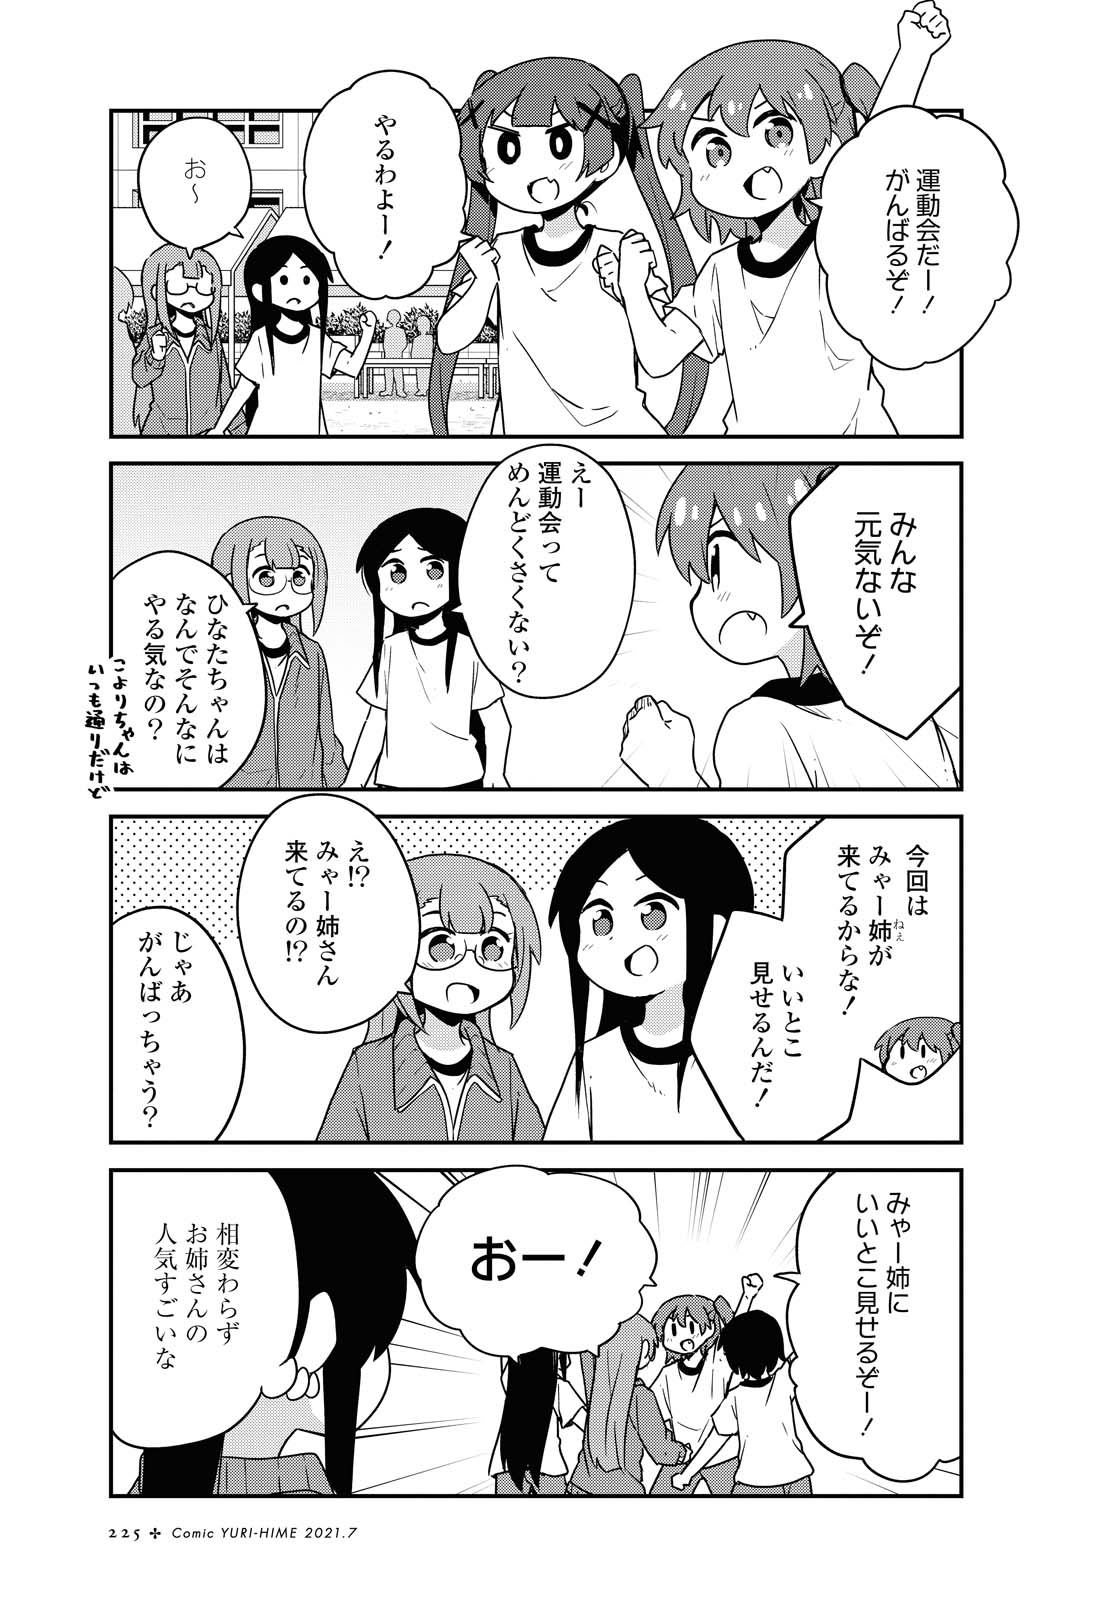 Watashi ni Tenshi ga Maiorita! - Chapter 83 - Page 1